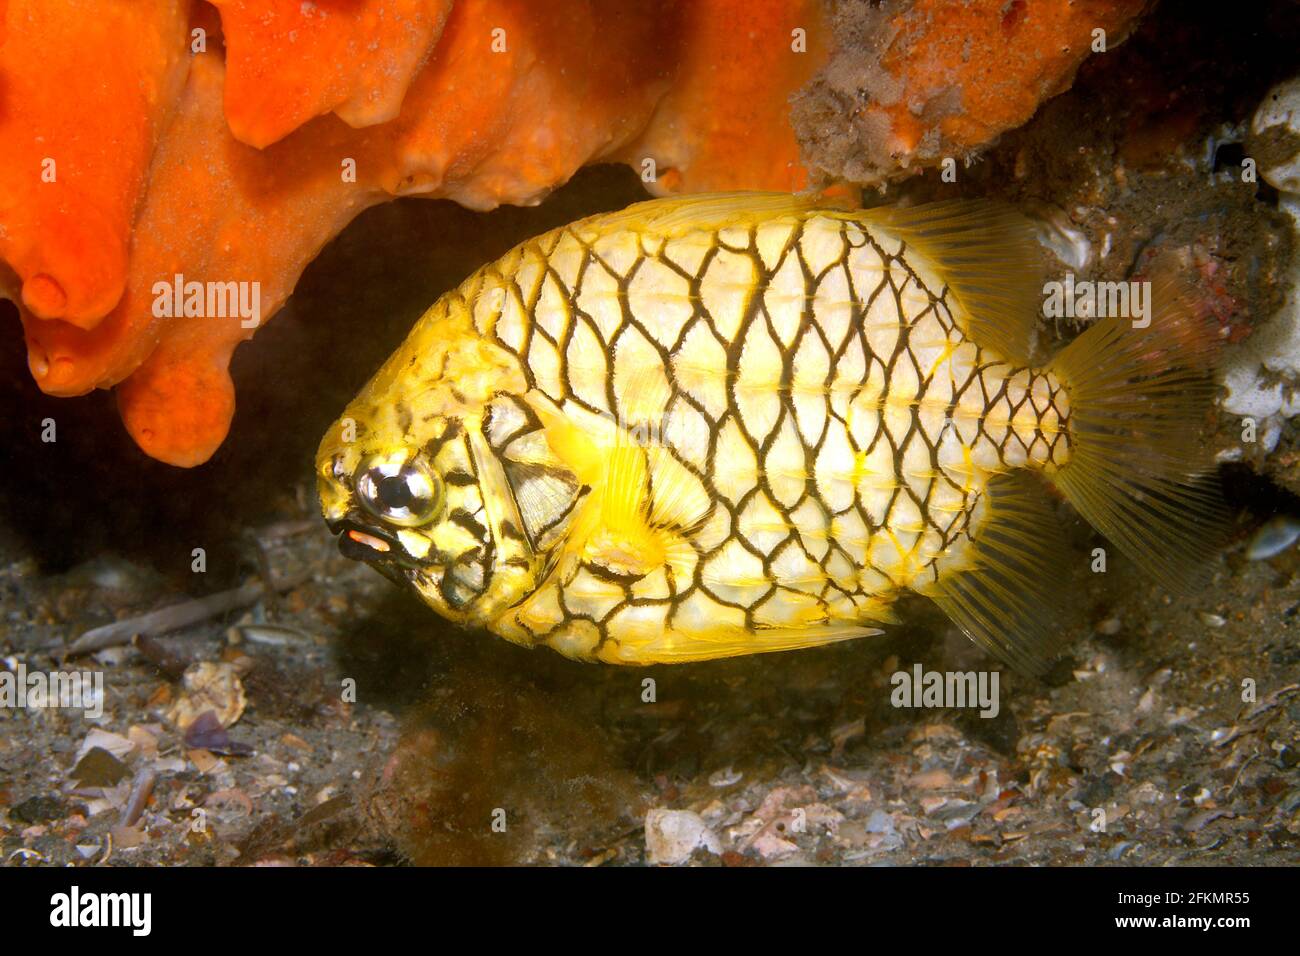 Pineapplefish, Cleidous gloriamaris, auch bekannt als der Knightfish, hat ein Paar roter biolumineszierender Organe unter jedem Auge am Unterkiefer. Stockfoto